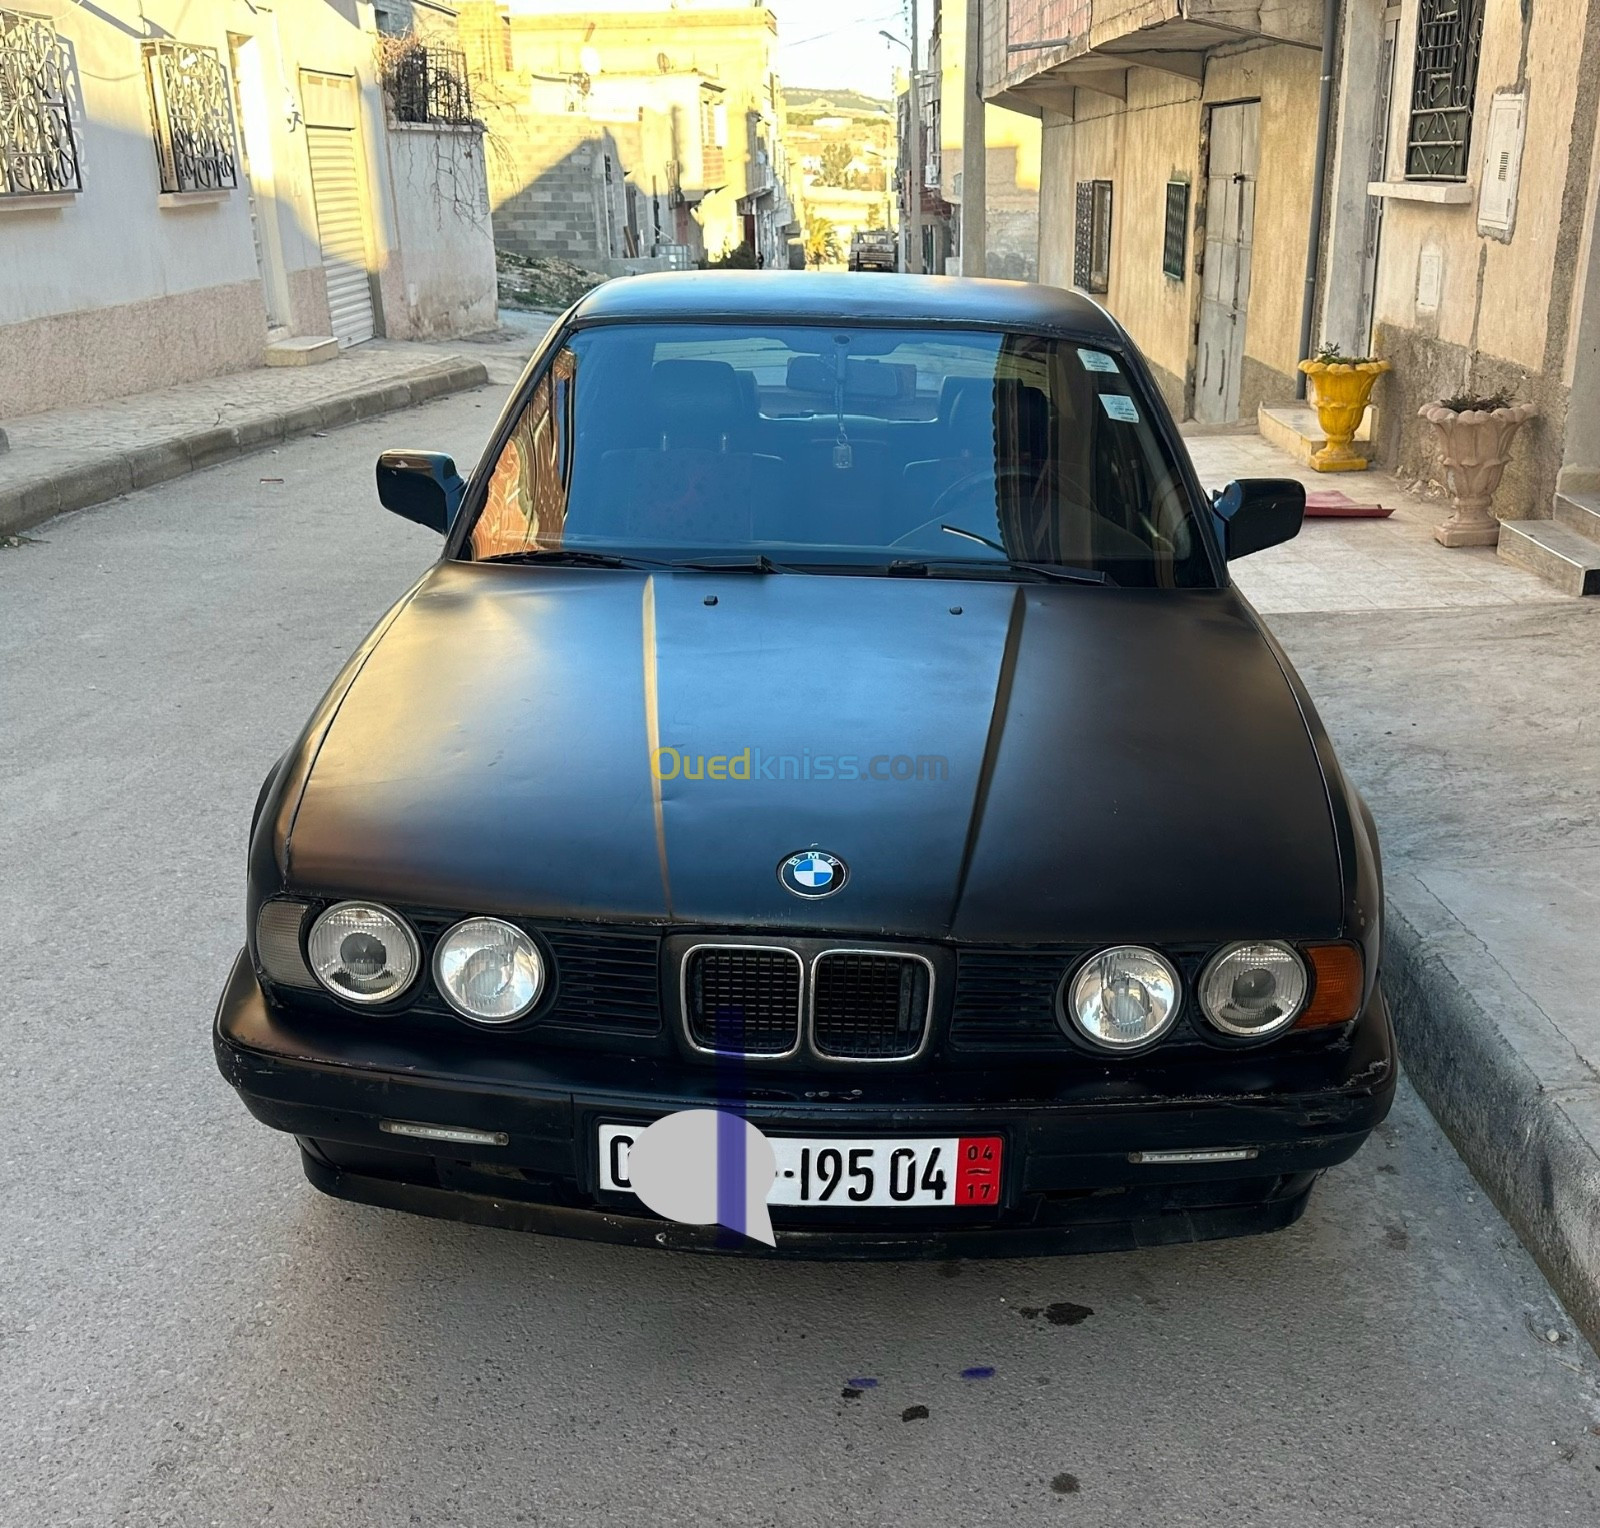 BMW Série 5 1995 Série 5